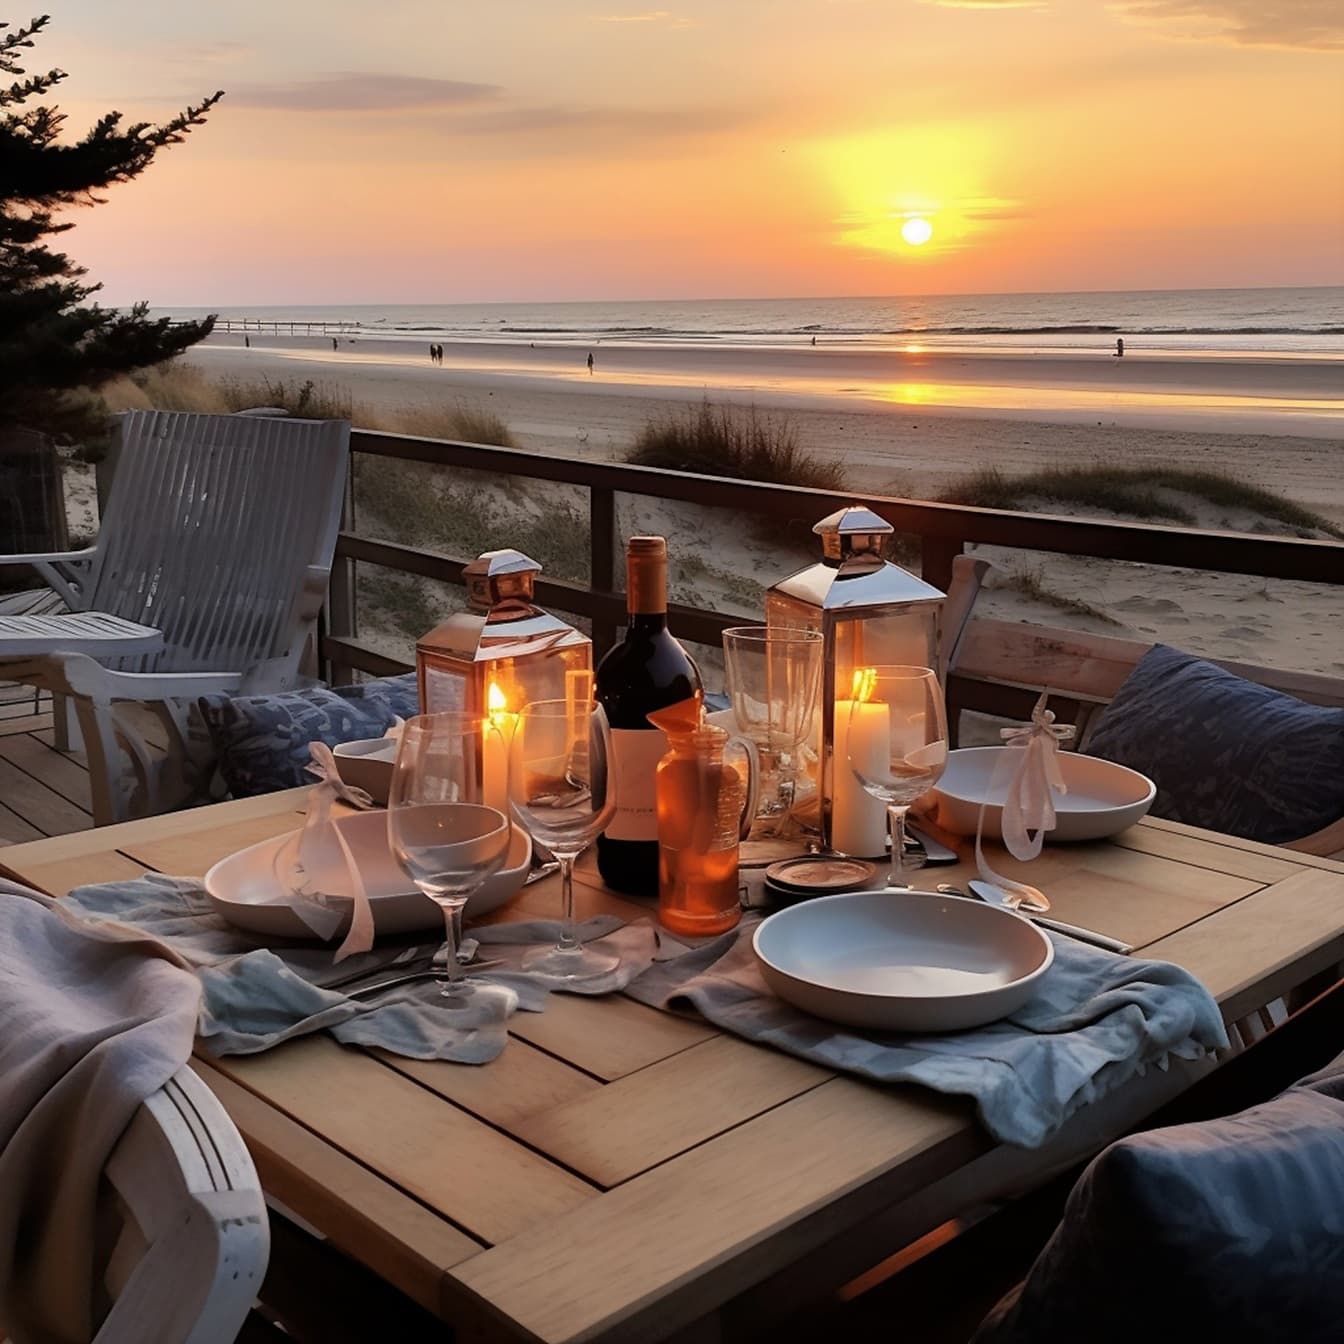 Романтический обеденный стол с красным вином и свечами в ресторане на берегу моря